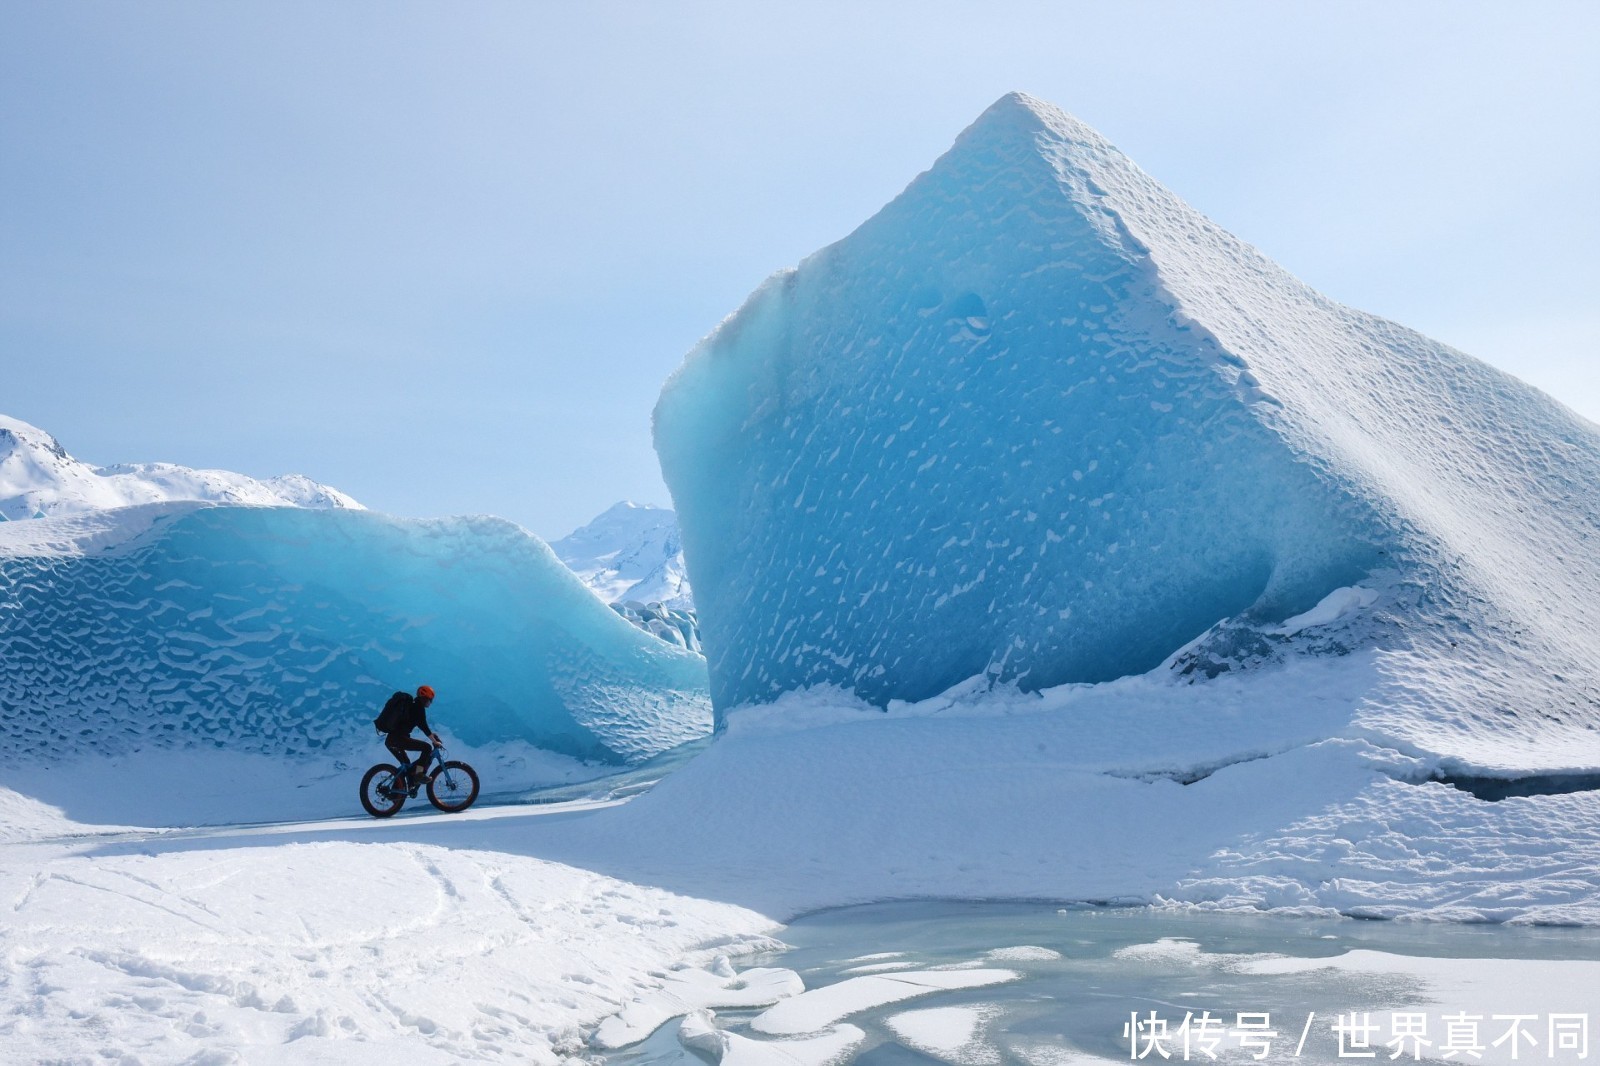 从格陵兰岛到阿拉斯加,十六张照片诠释了冰川